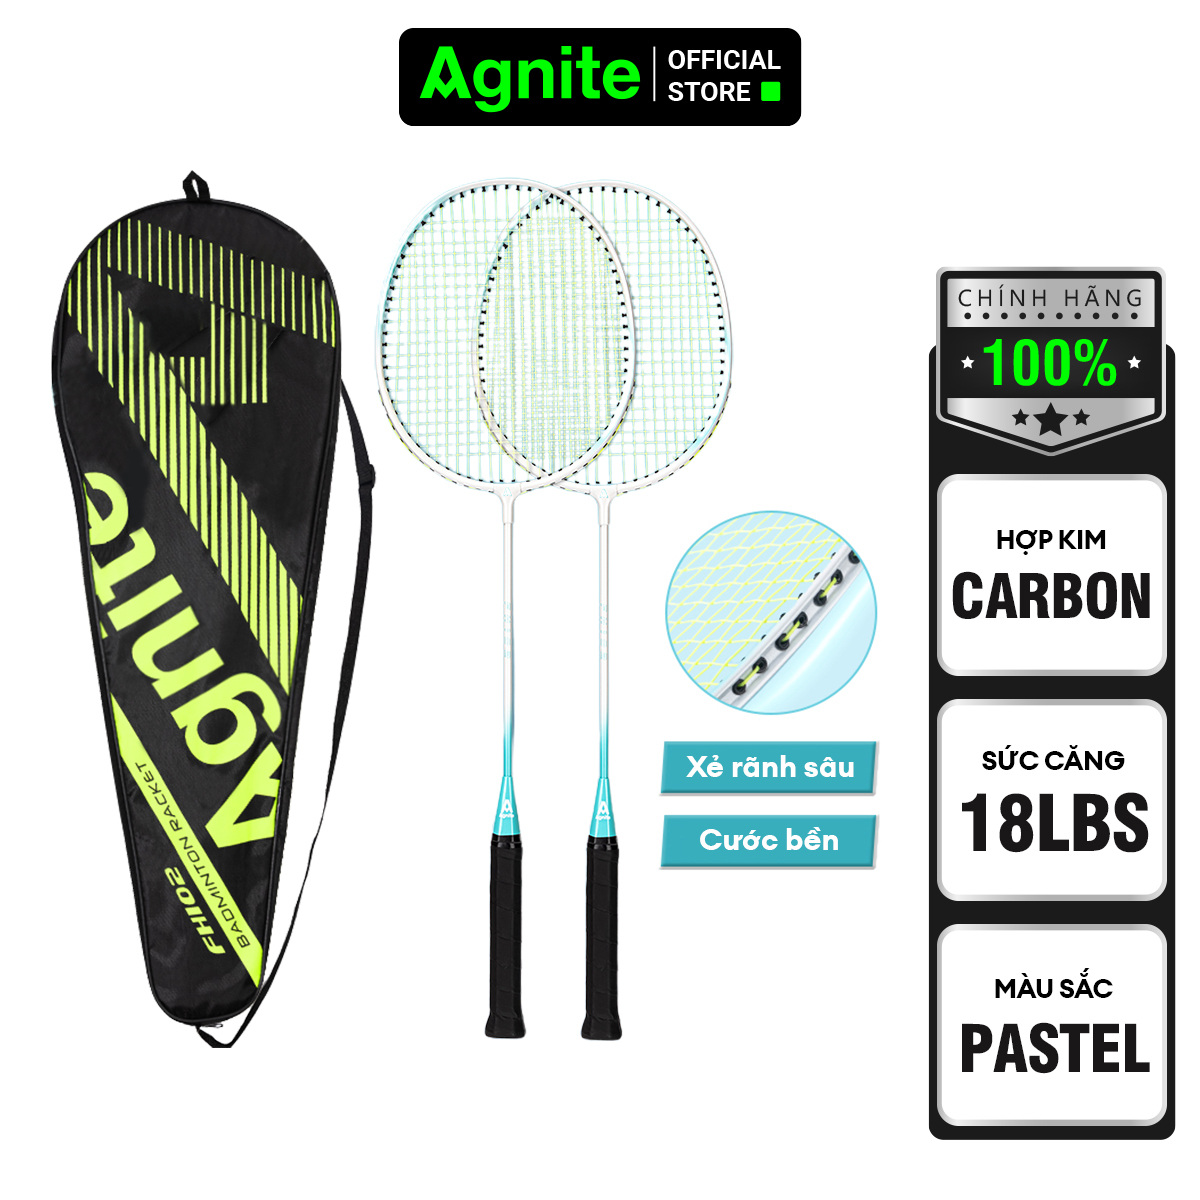 Hình ảnh Bộ 2 vợt cầu lông Agnite chính hãng, hợp kim cacbon siêu bền, khớp chữ T, thiết kế khung rãnh sâu, màu pastel - FH102